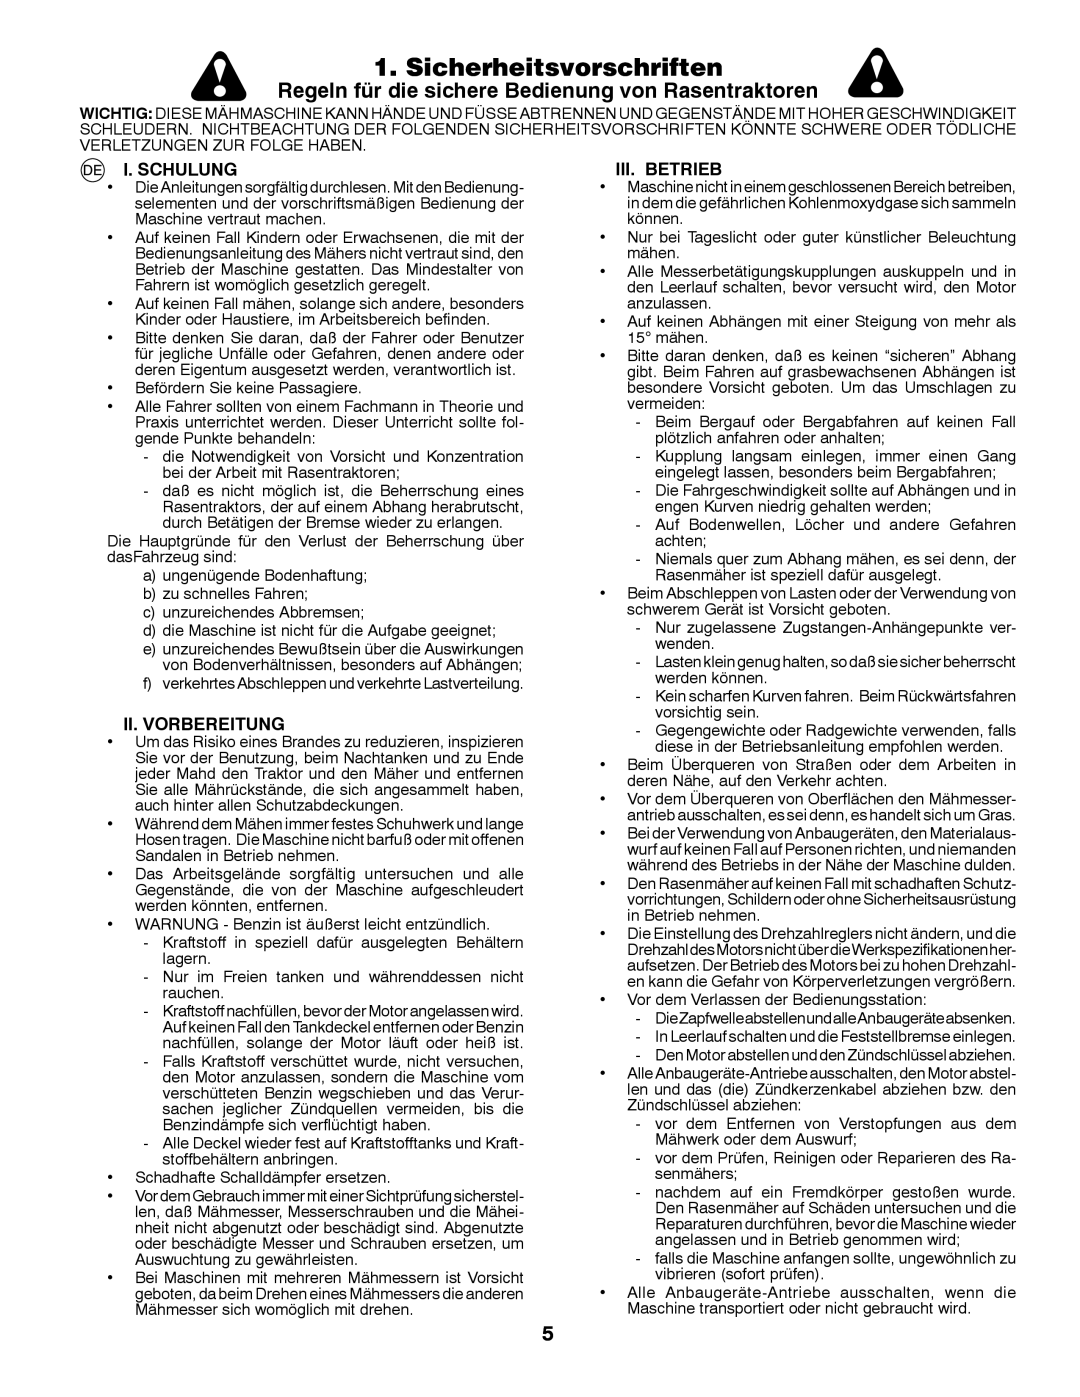 McCulloch 532 43 30-30, M12597RB Sicherheitsvorschriften, Regeln für die sichere Bedienung von Rasentraktoren, I. Schulung 